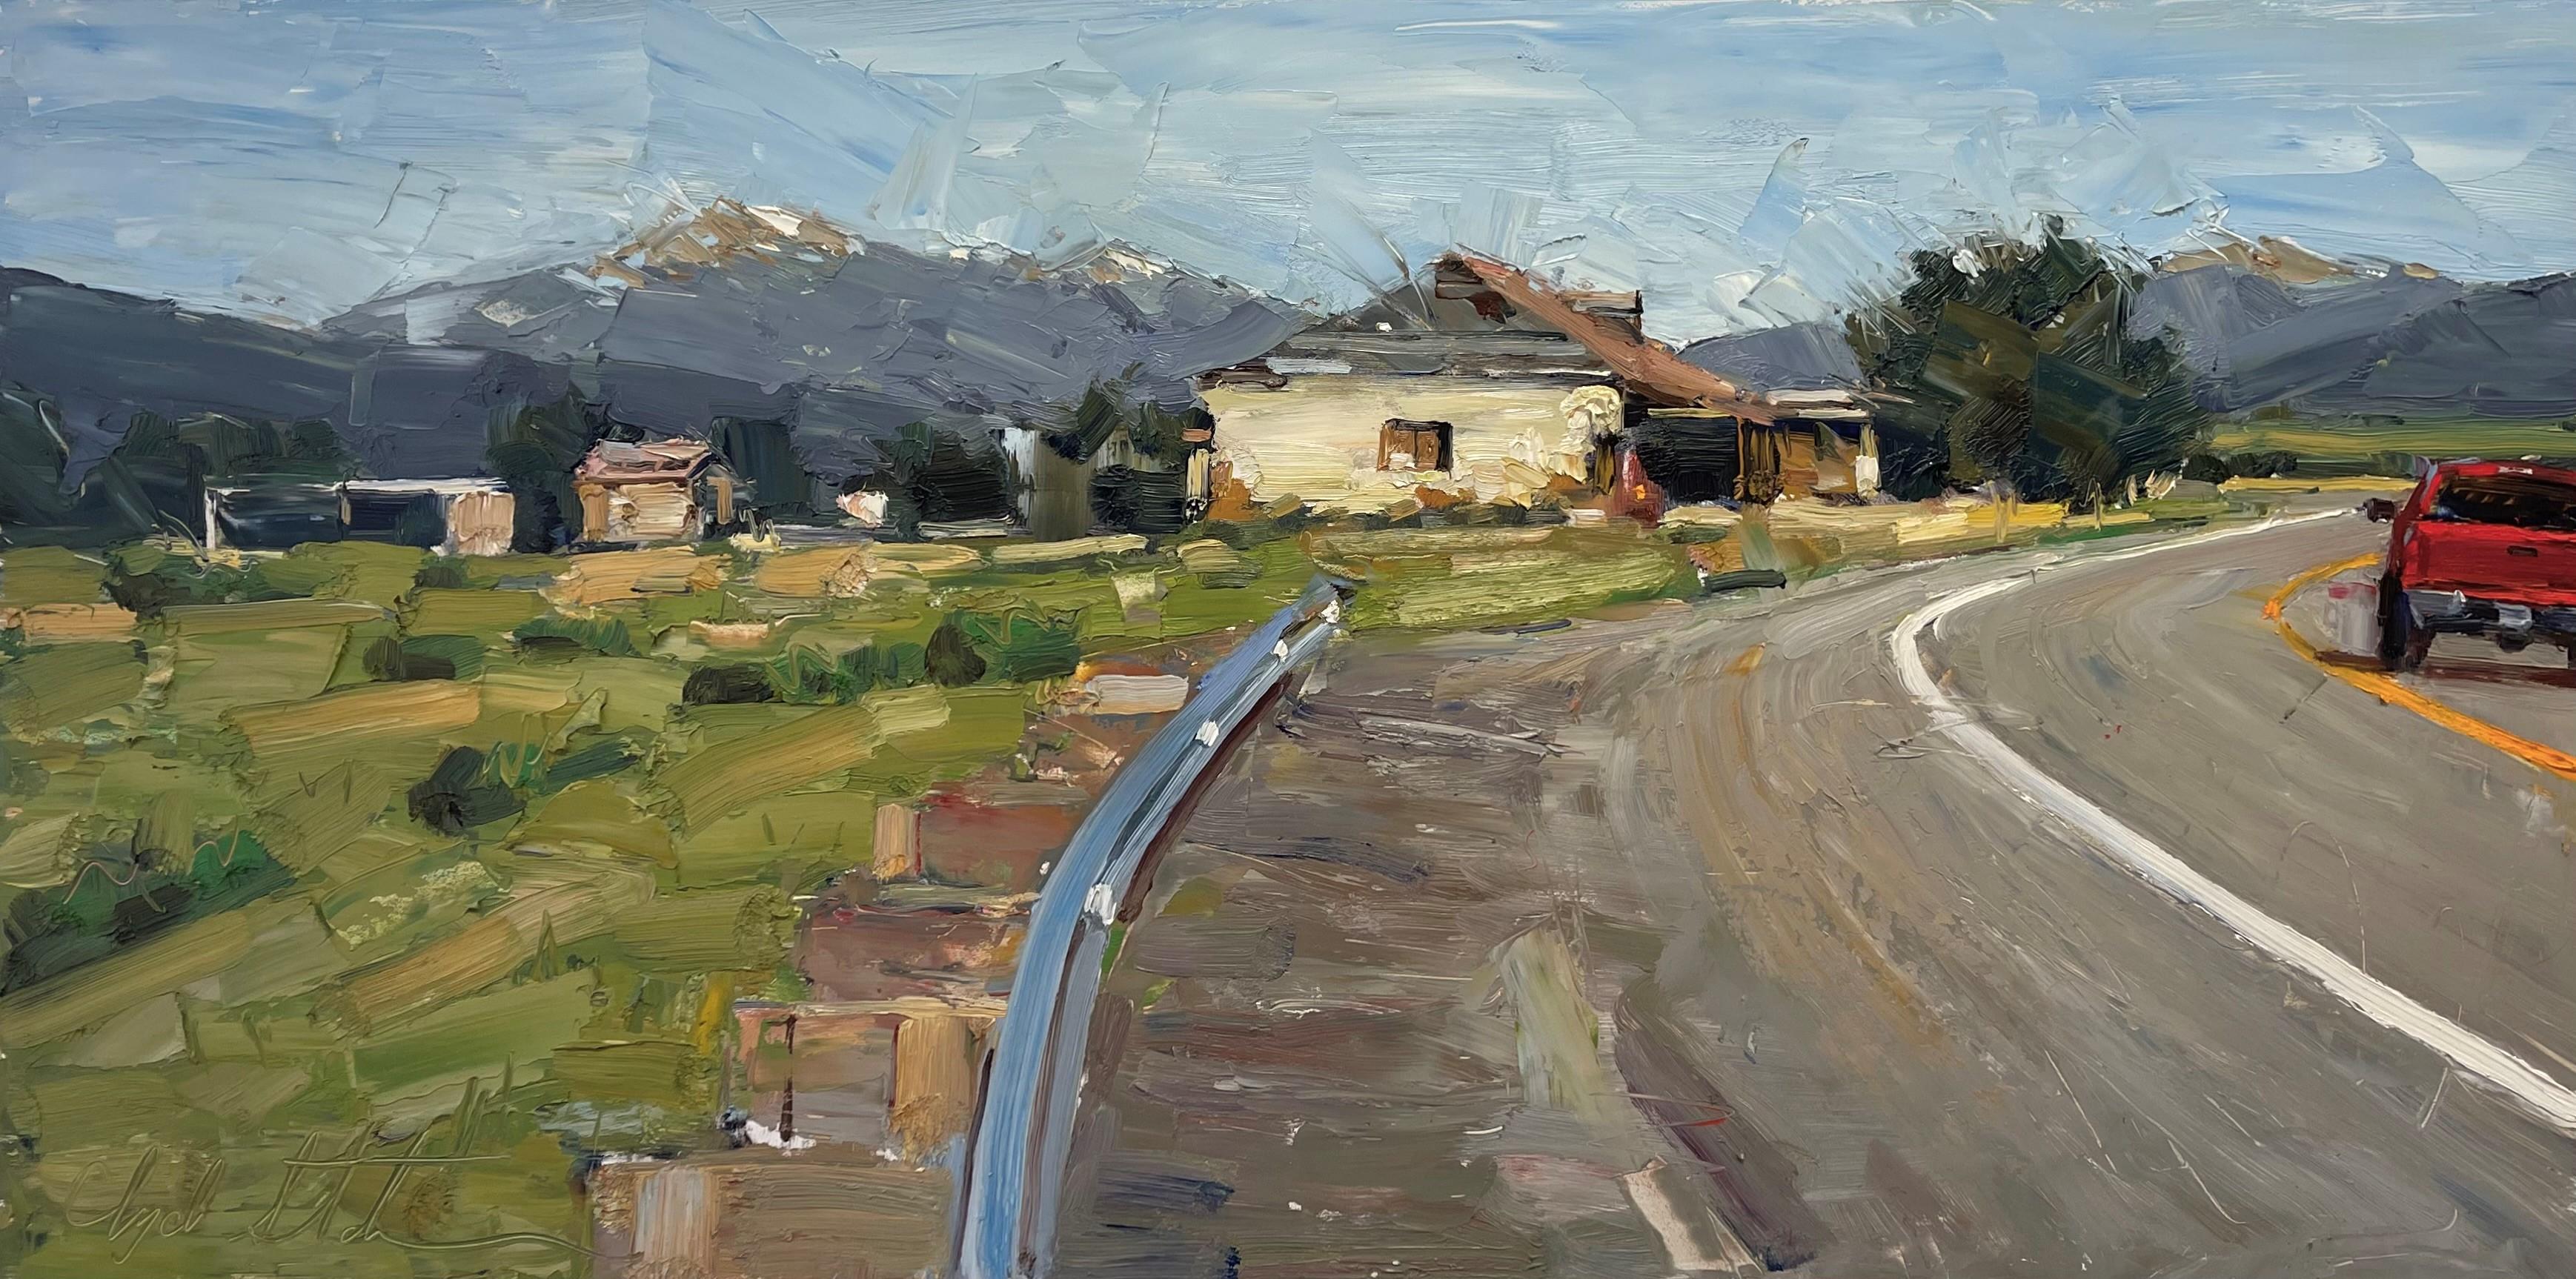 Landscape Painting Clyde Steadman - "Going Round the Bend" (Le virage) Peinture à l'huile